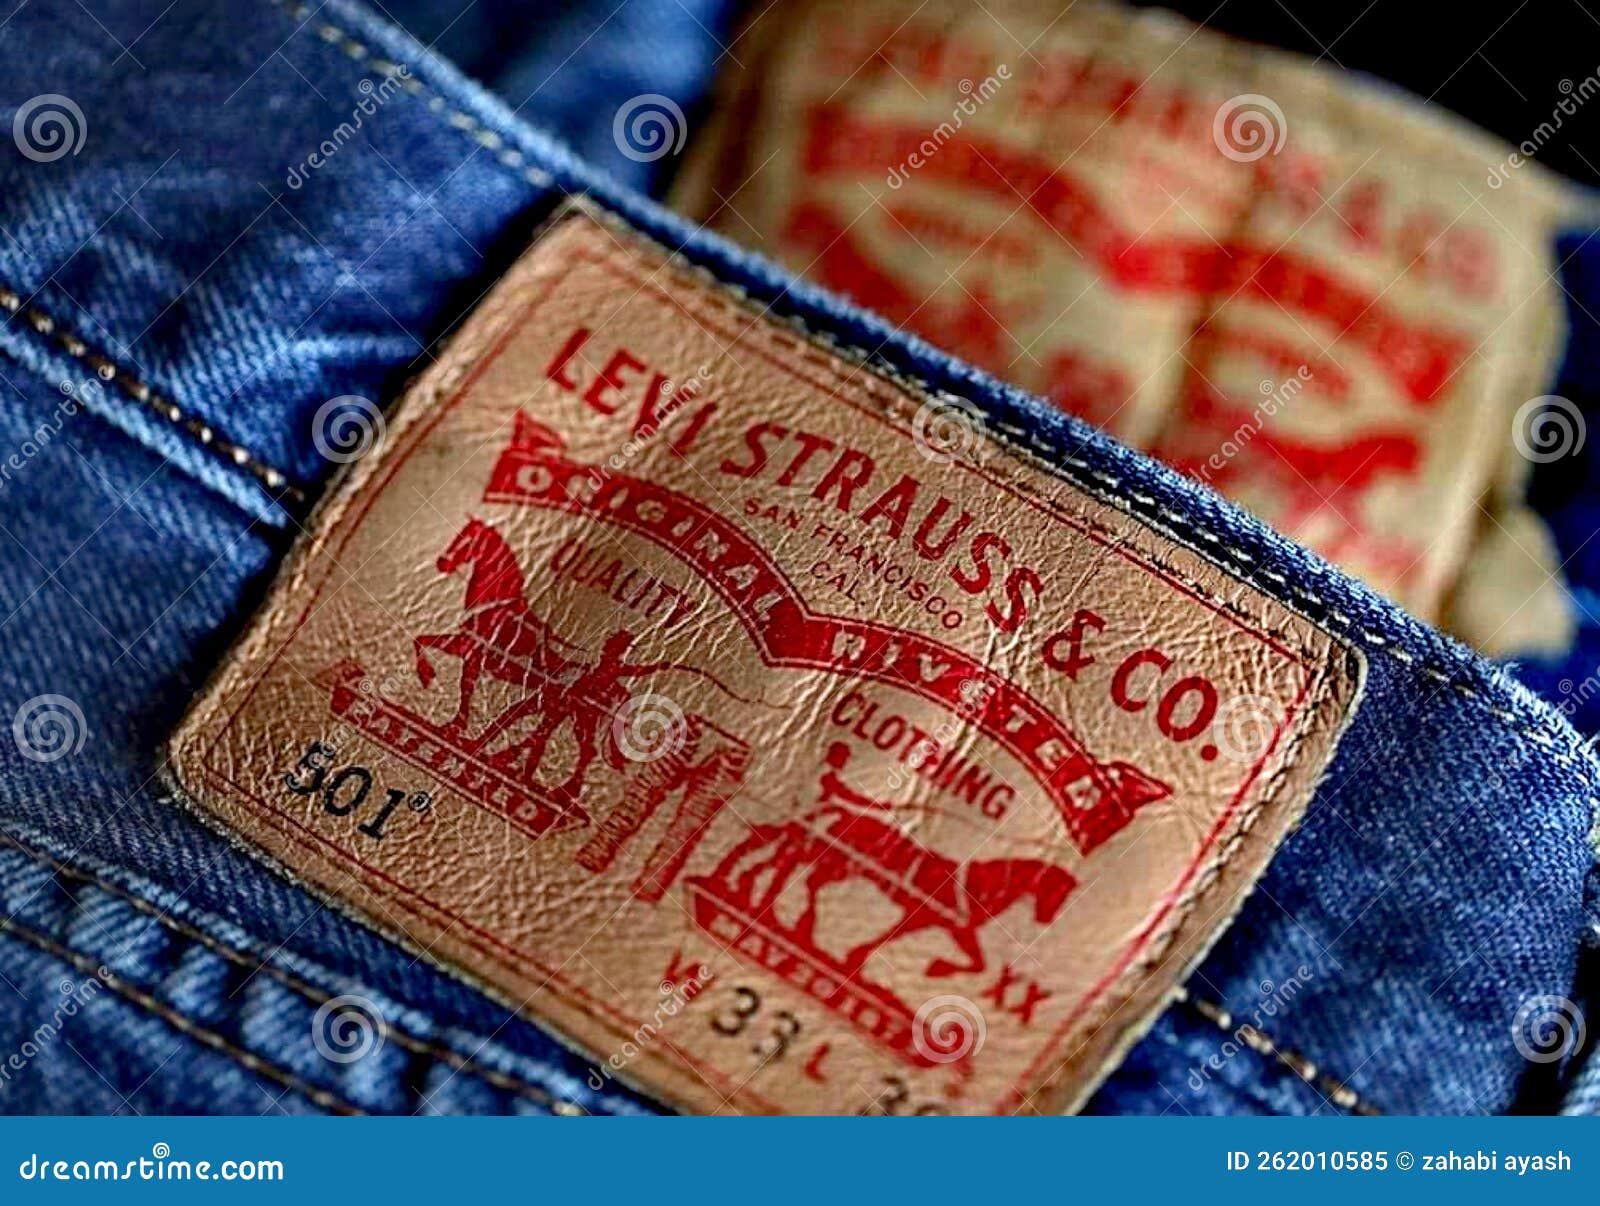 Escondido Do Levi Strauss Lebel Em Jeans Azuis. Imagem Editorial